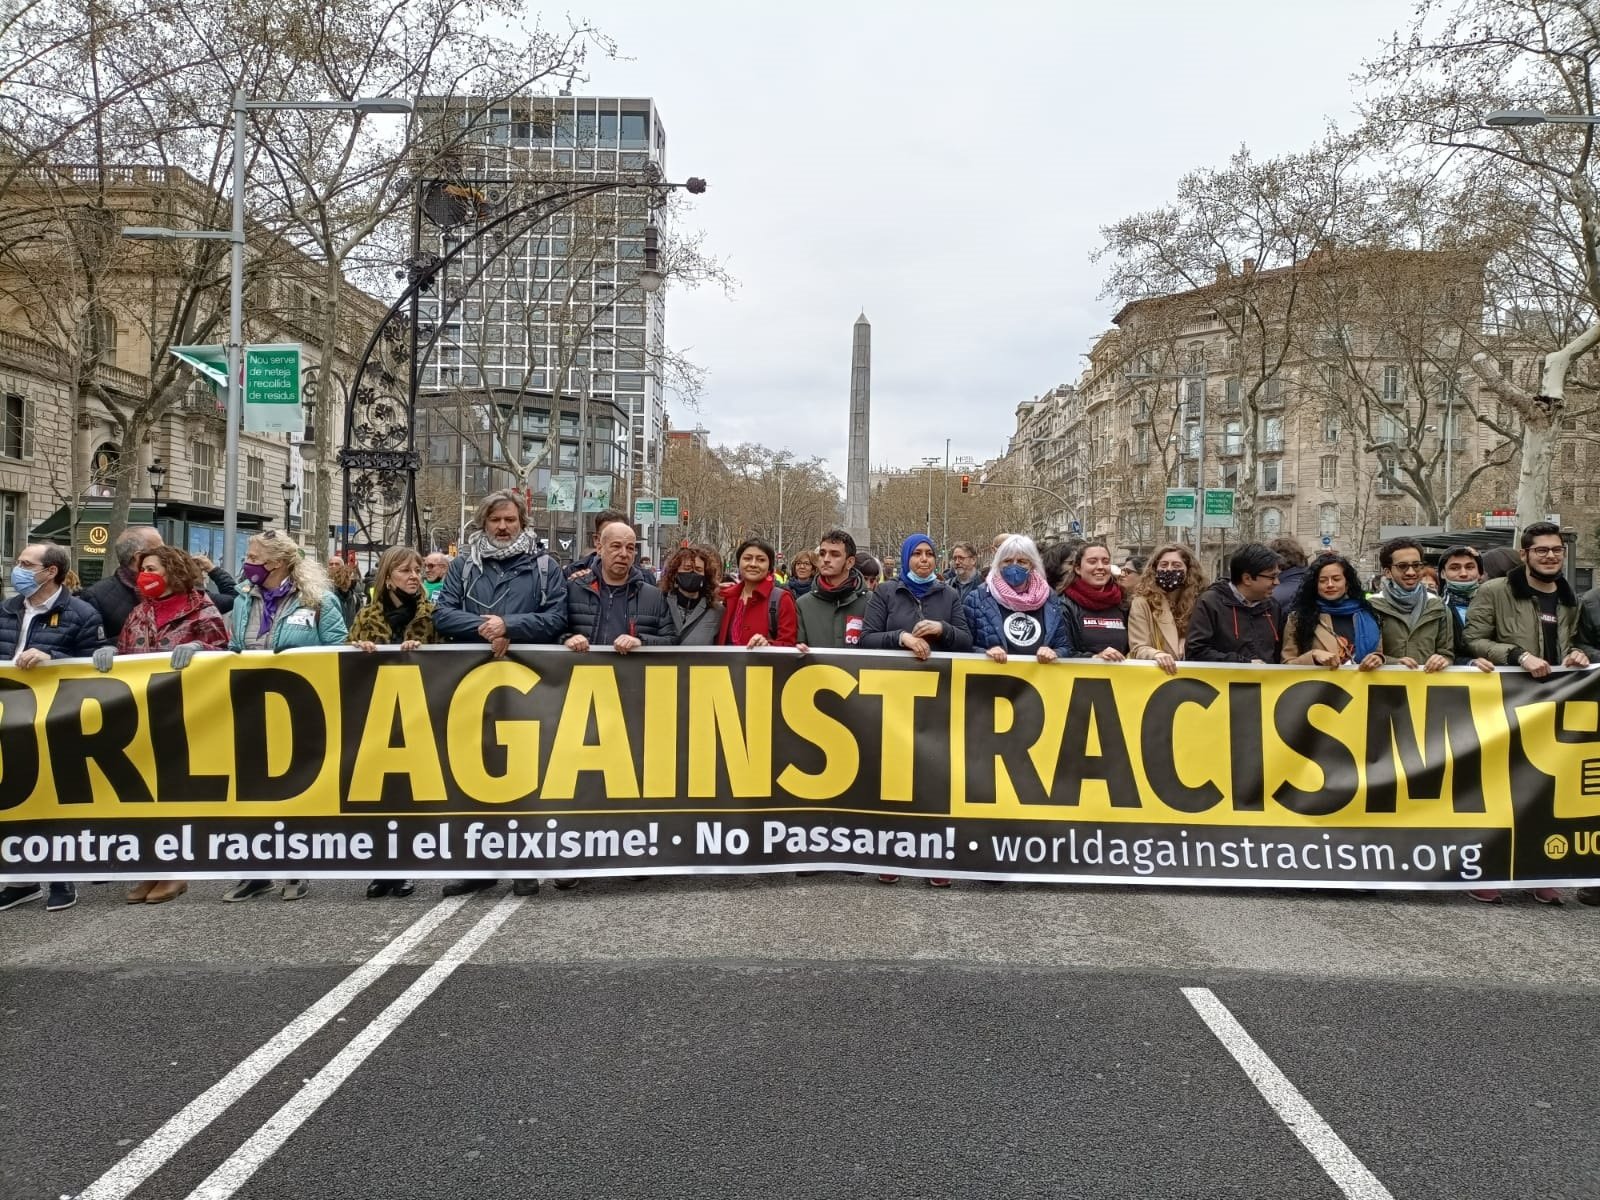 La sàtira com a vacuna contra l’odi: nova campanya antiracista a Barcelona